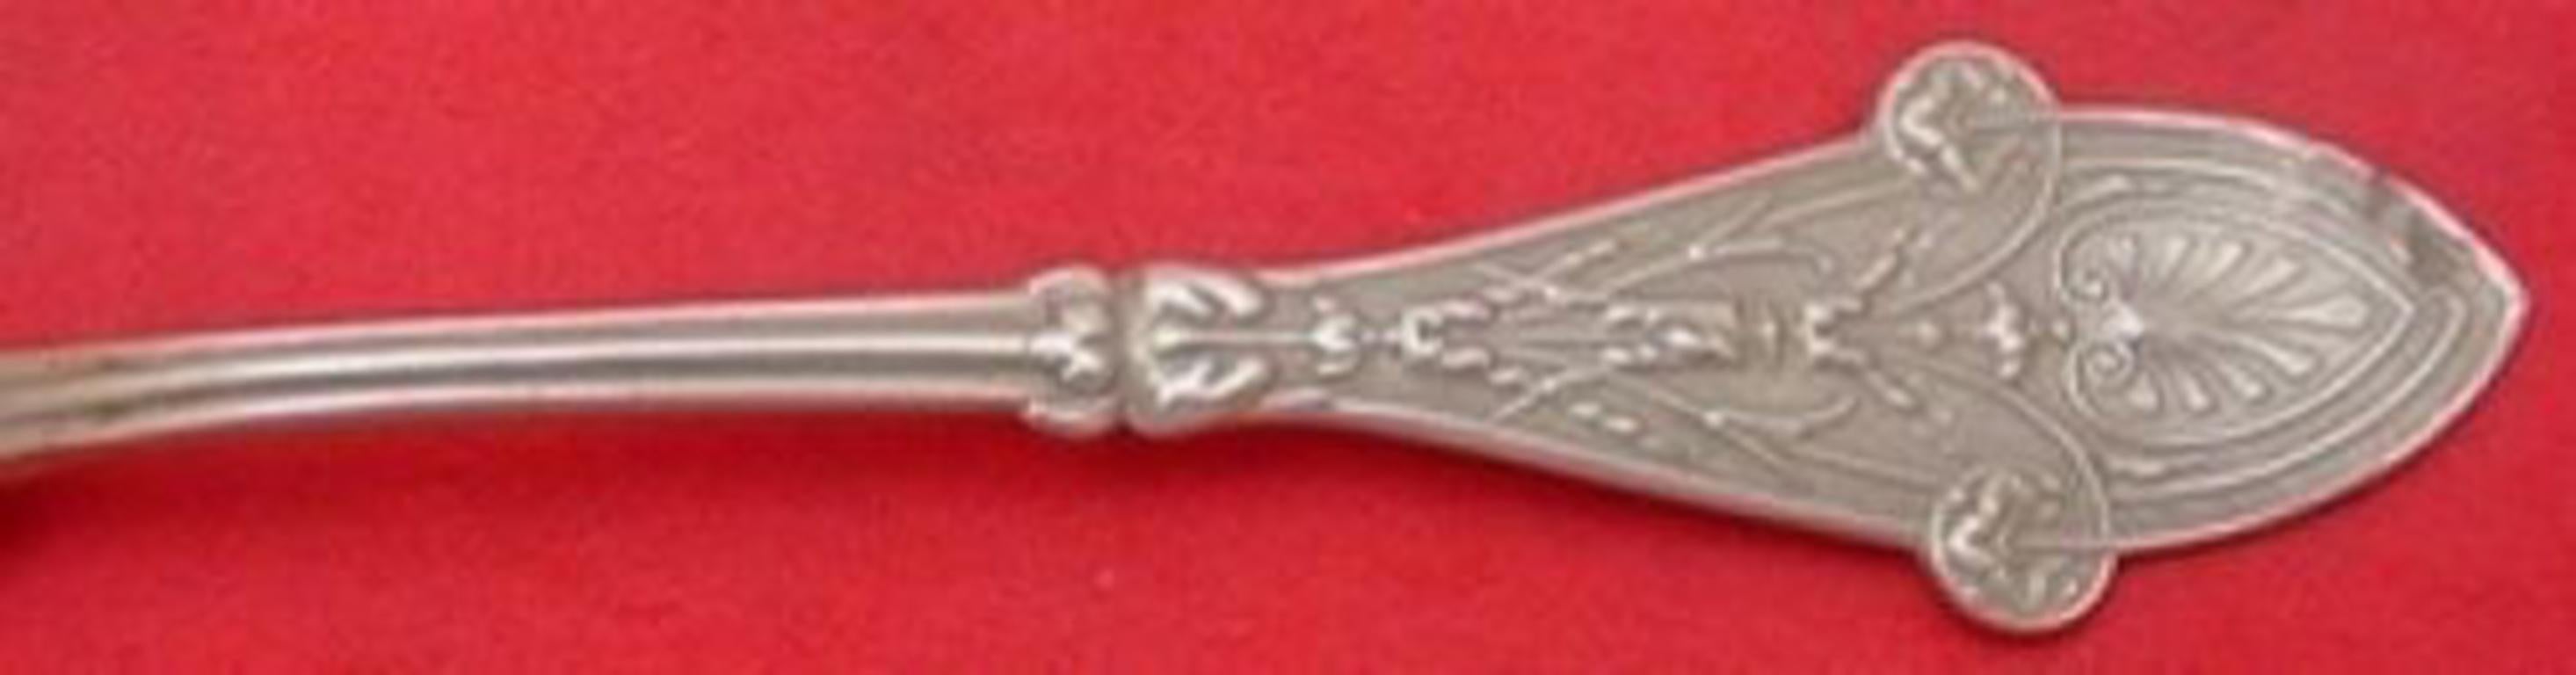 Sterling silver cracker spoon 9 1/2